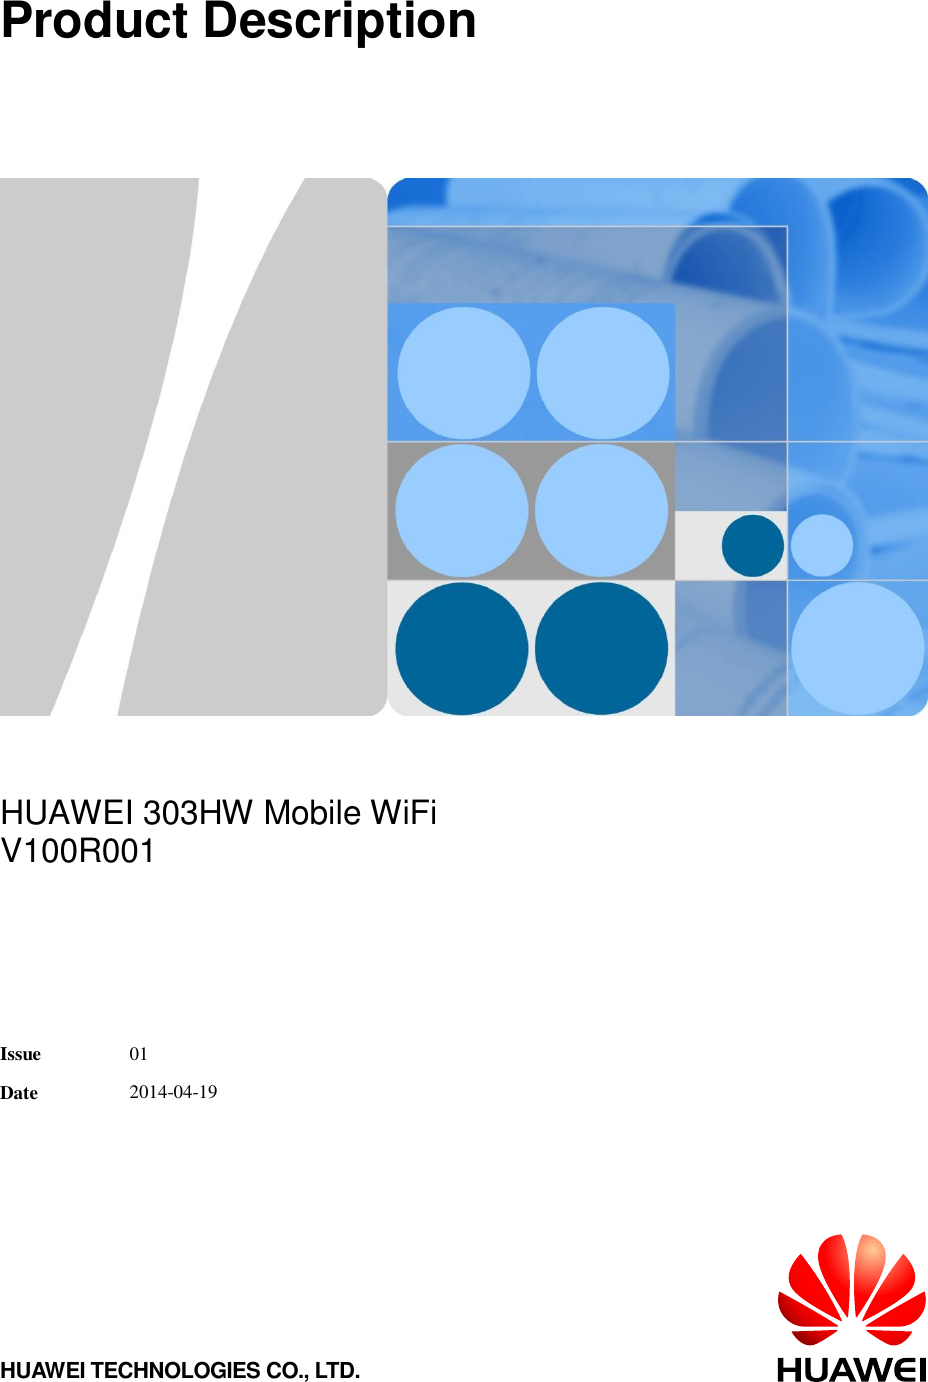 Huawei 使用工具条红框内的按钮 设置封面及页眉页脚的文档说明信息